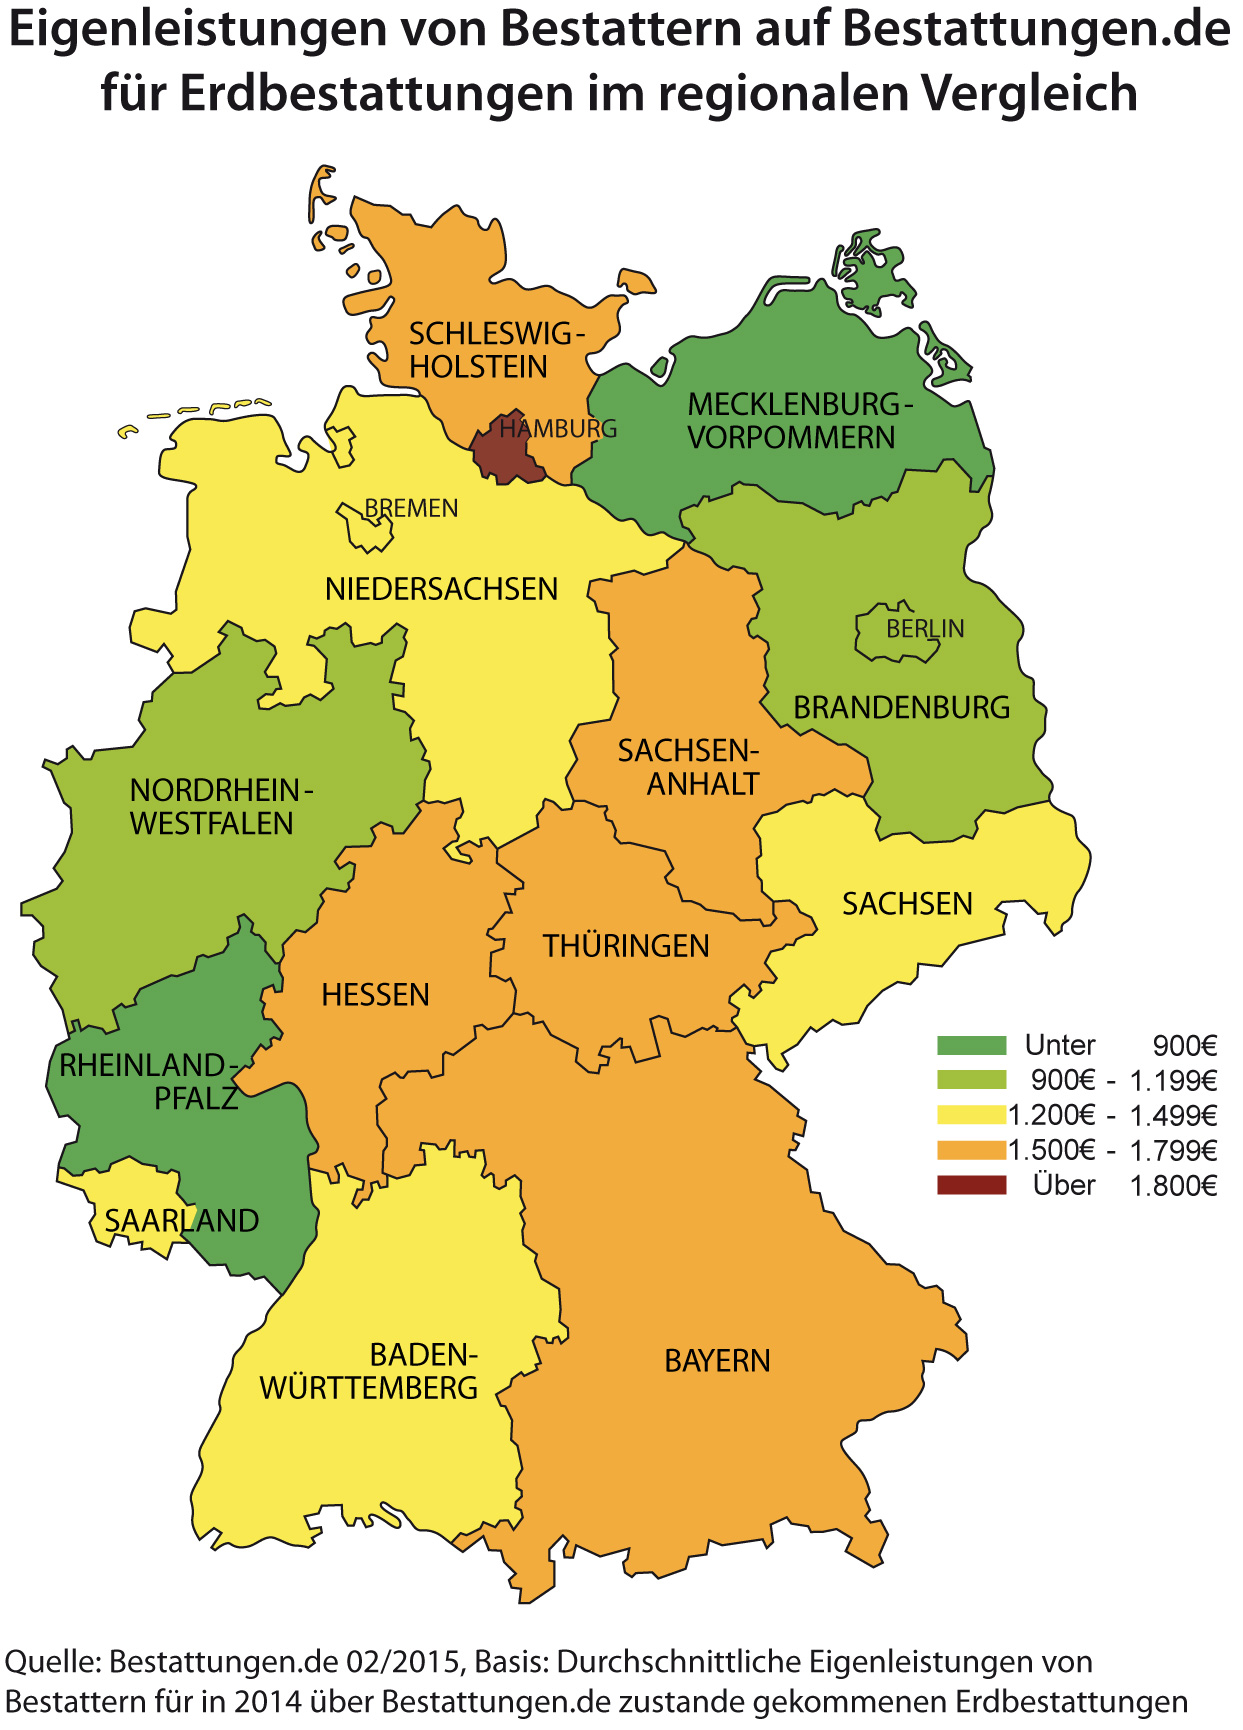 Eigenleistungen von Bestattern auf Bestattungen.de im regionalen Vergleich 2014 - durchschnittliche Bestattungskosten je Bundesland